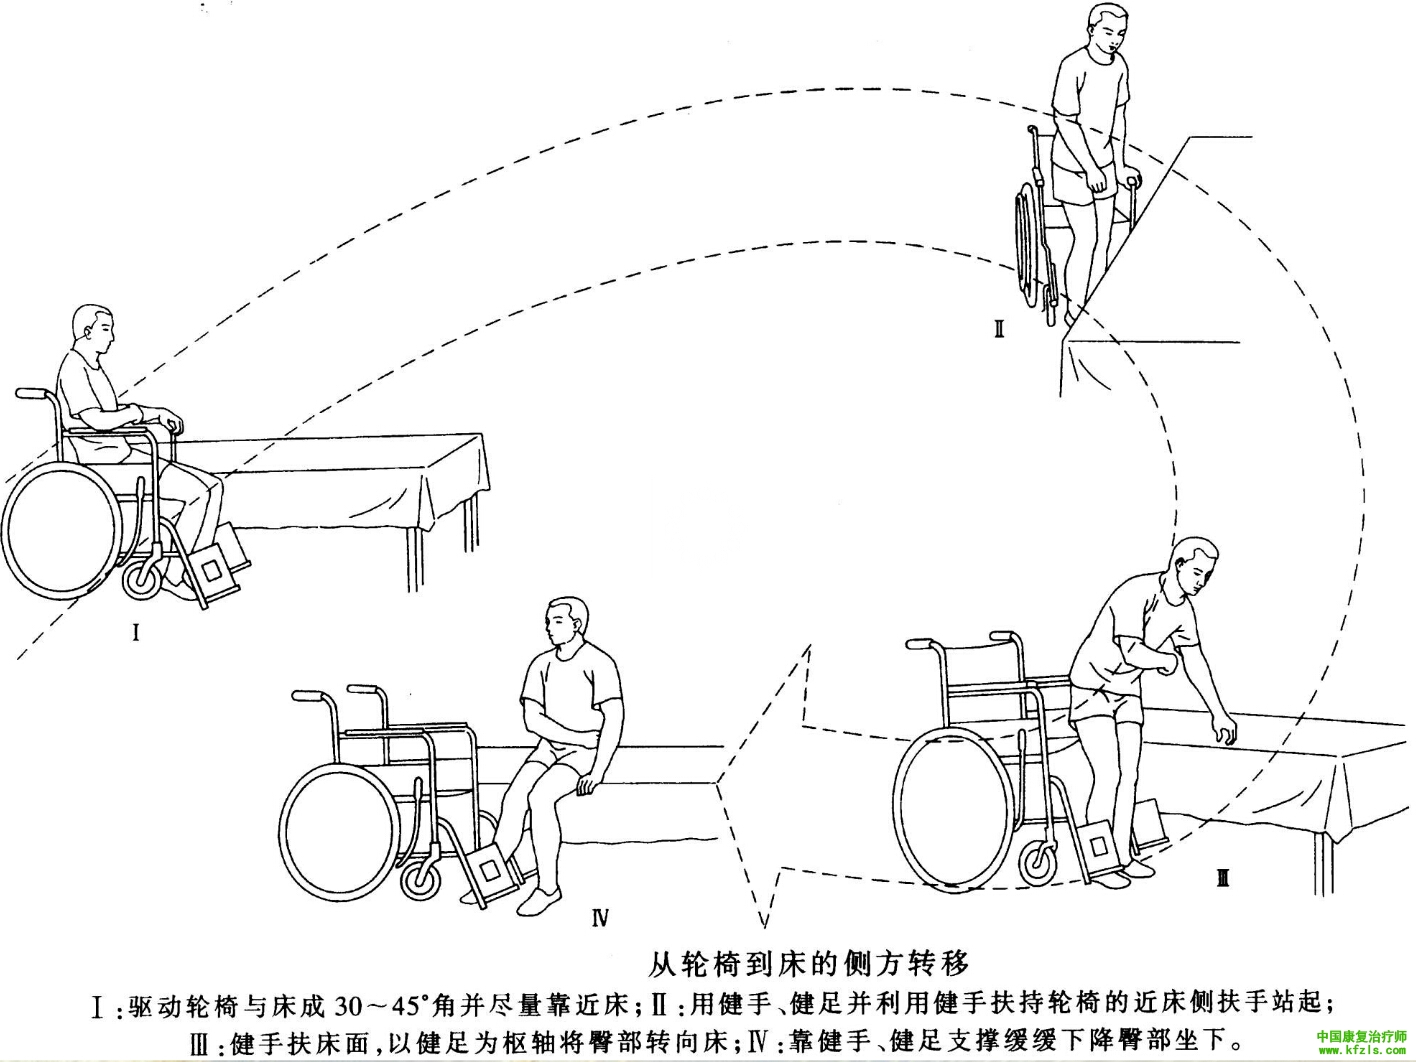 偏瘫患者独立从轮椅到床的侧方转移